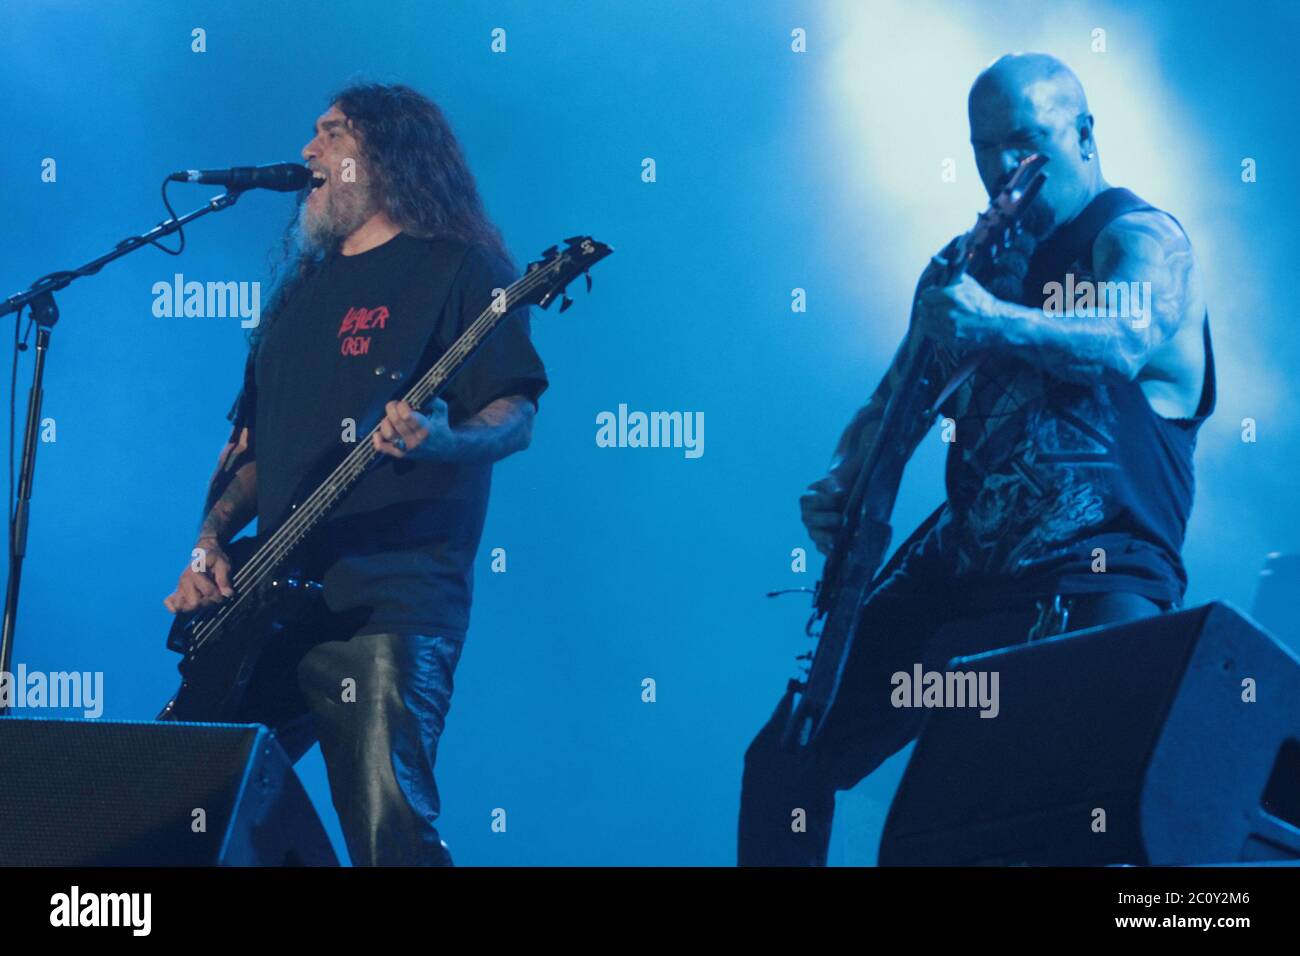 RIO DE JANEIRO, 22.09.2013: Slayer suona al Sunset Stage di Rock a Rio V a Rio de Janeiro (Néstor J. Beremblum / Alamy News) Foto Stock